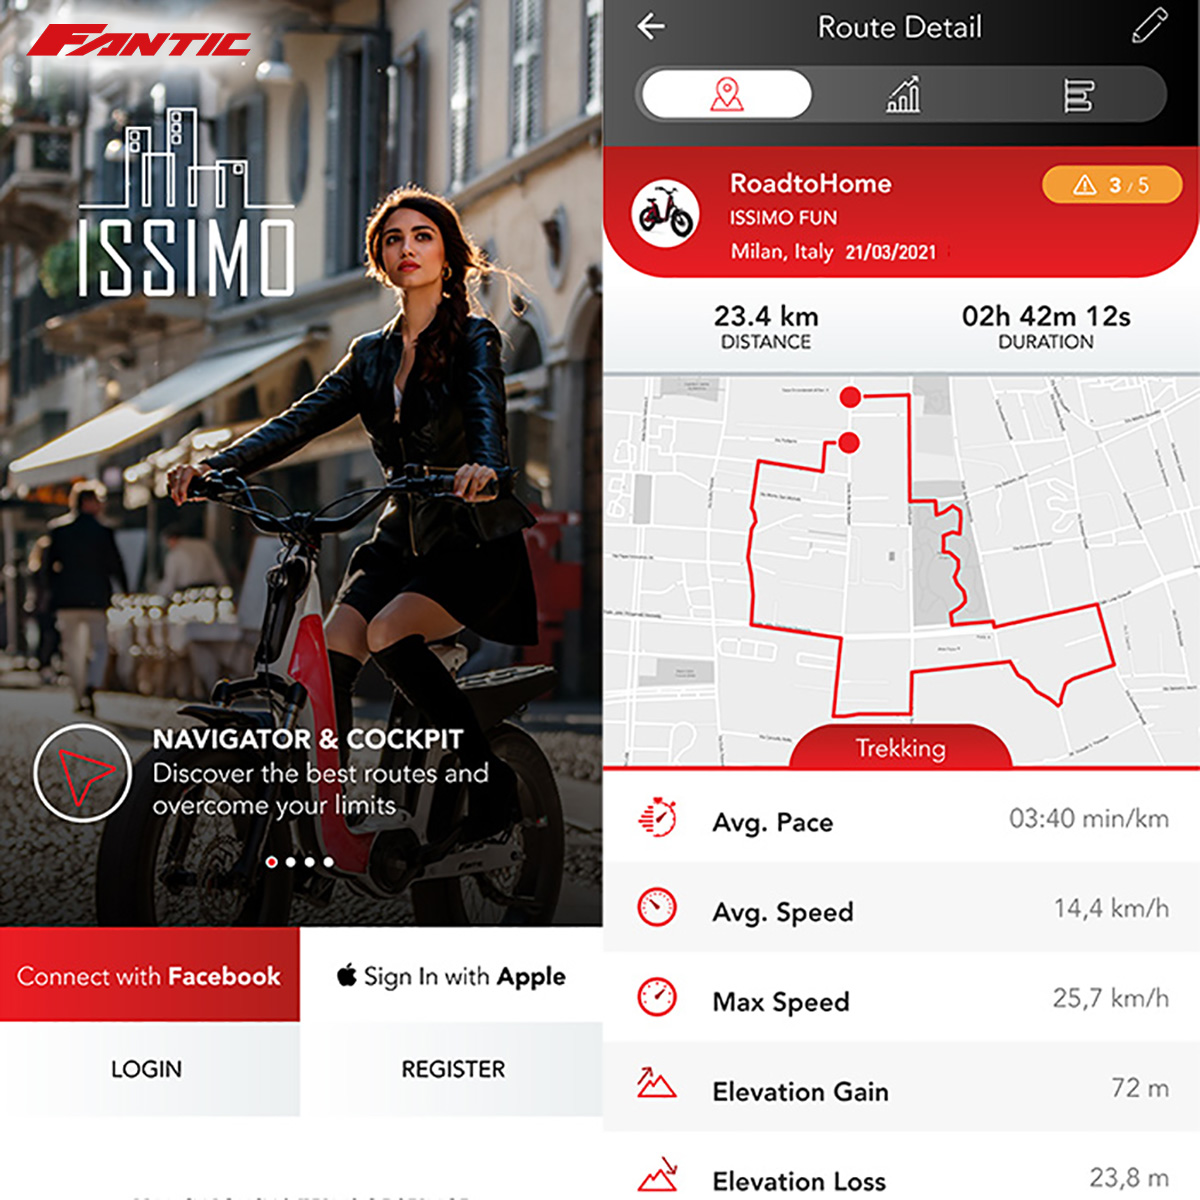 Una schermata dell’App Issimo mostra il navigatore attivo e i relativi dati